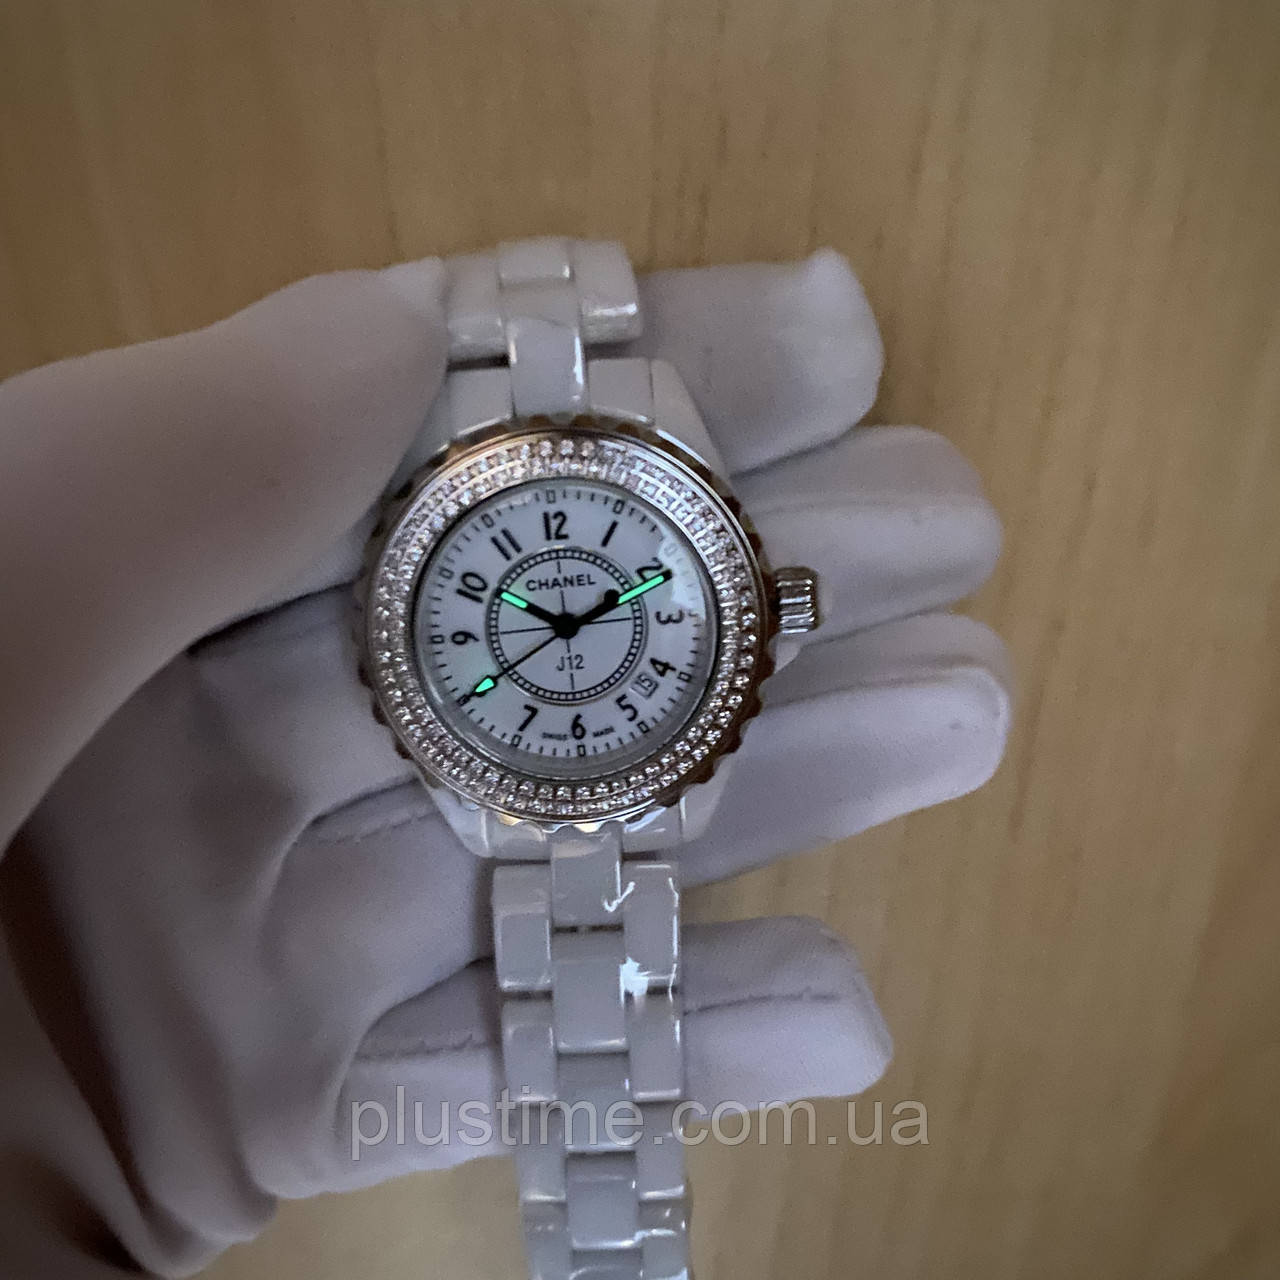 Швейцарские часы Chanel J12 7630 купить в Москве узнать цену в каталоге  ломбарда на Сретенке